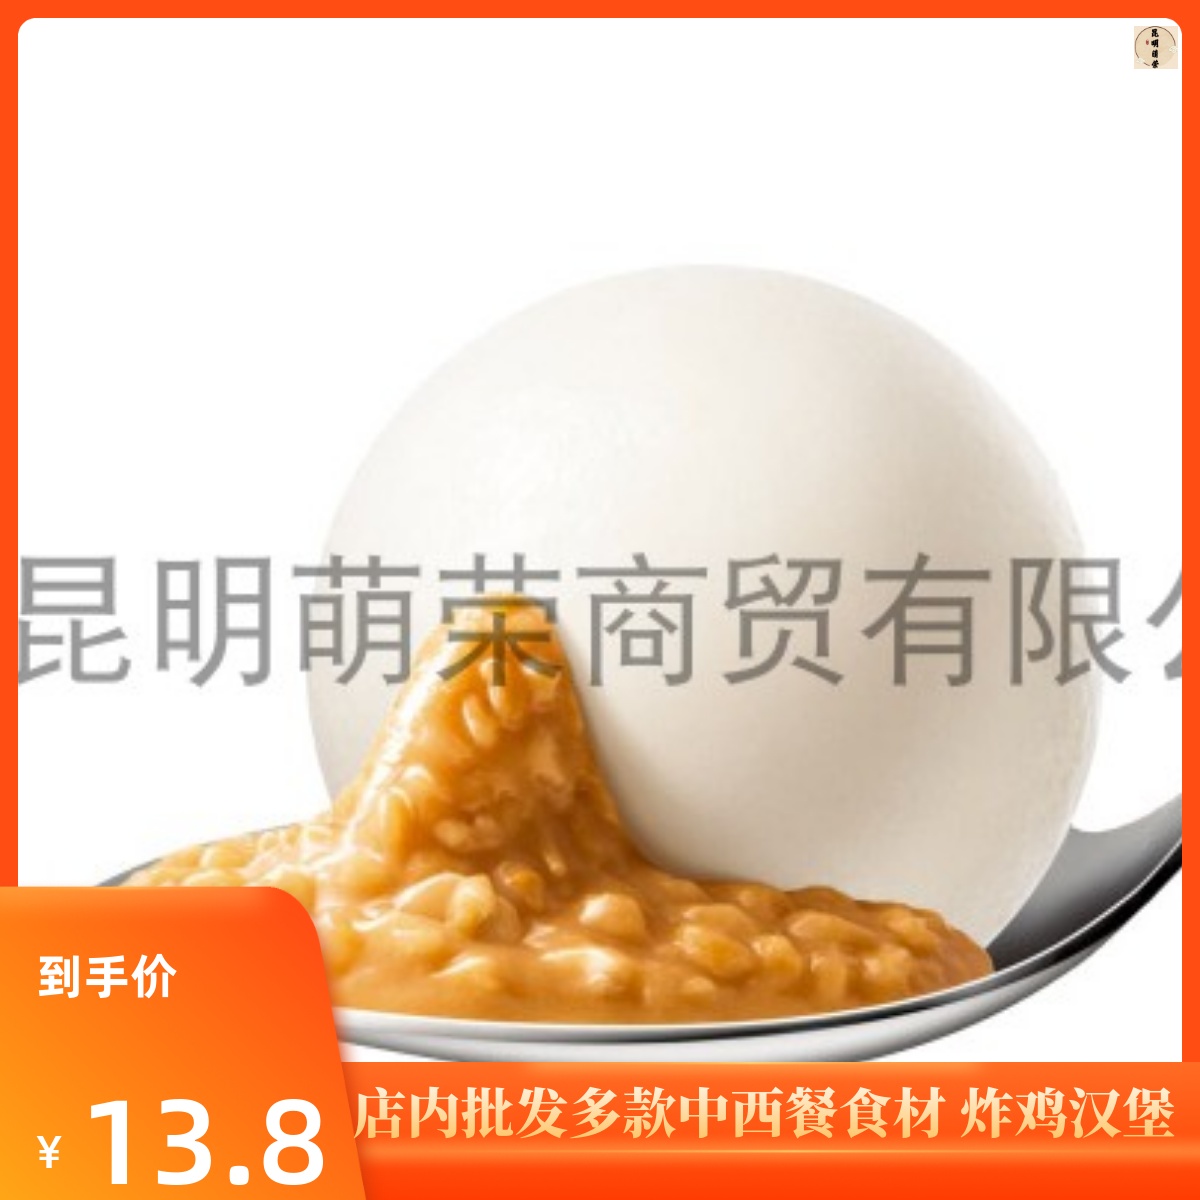 龙凤雪之红豆汤圆-食品商务网